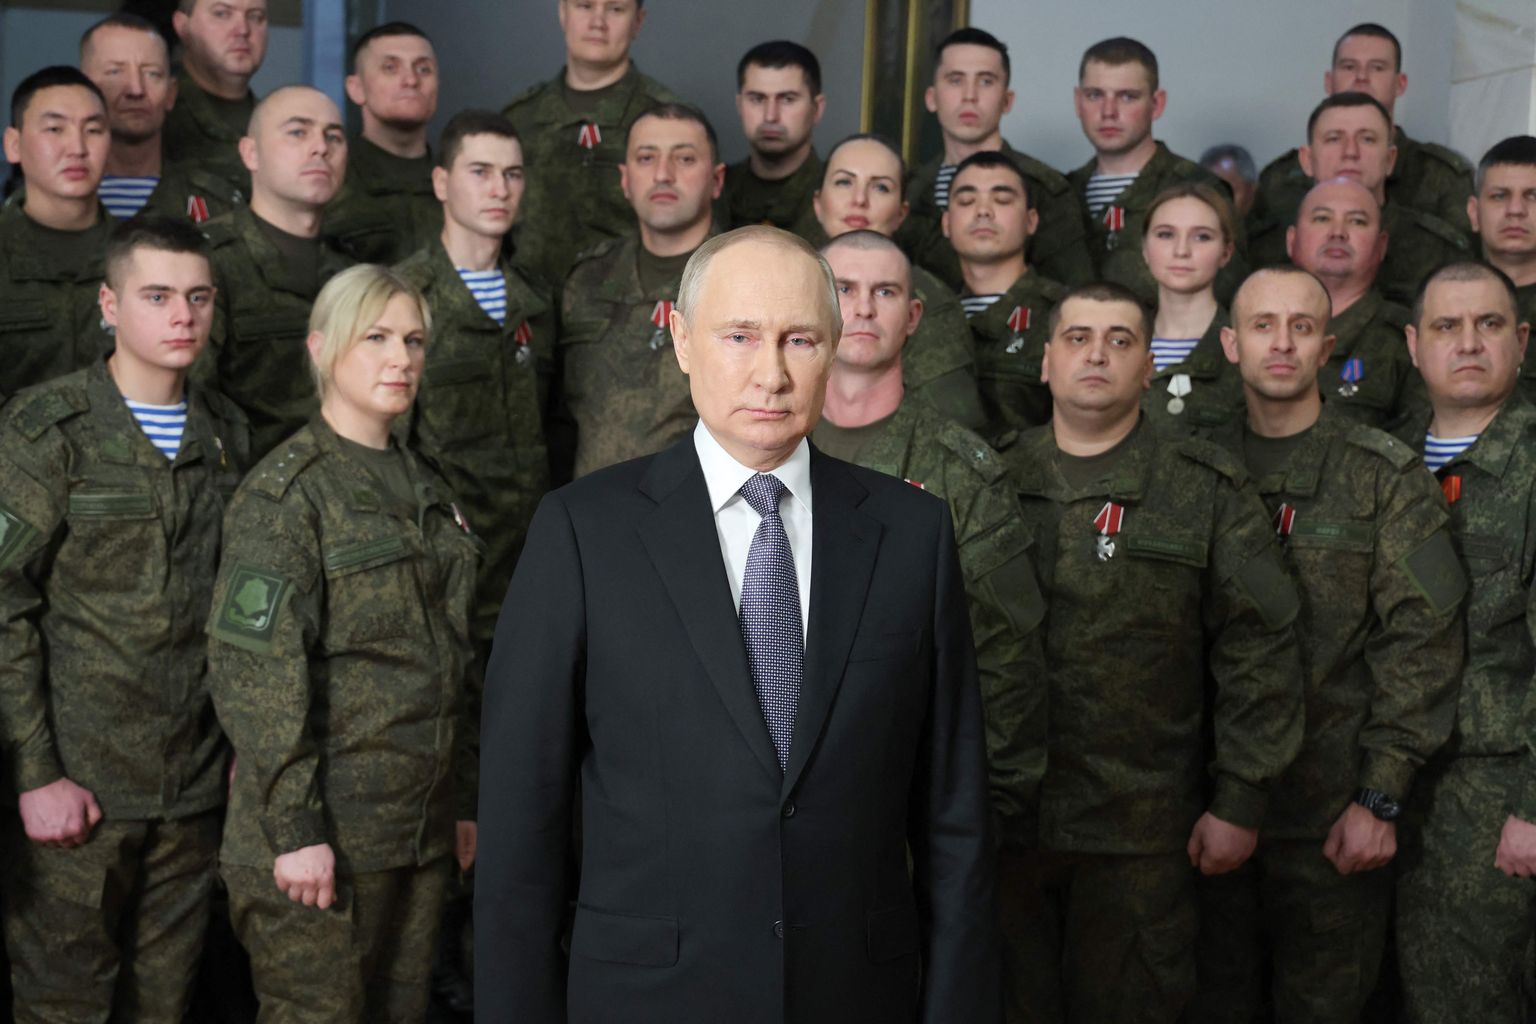 Venemaa president Vladimir Putin pidas 31. detsembril 2022 uusaastakõne Lõuna sõjaväeringkonnas Rostovis Doni ääres. Ta seljataga esimeses reas on näha blondi naist, kes võib olla ta ihukaitsja